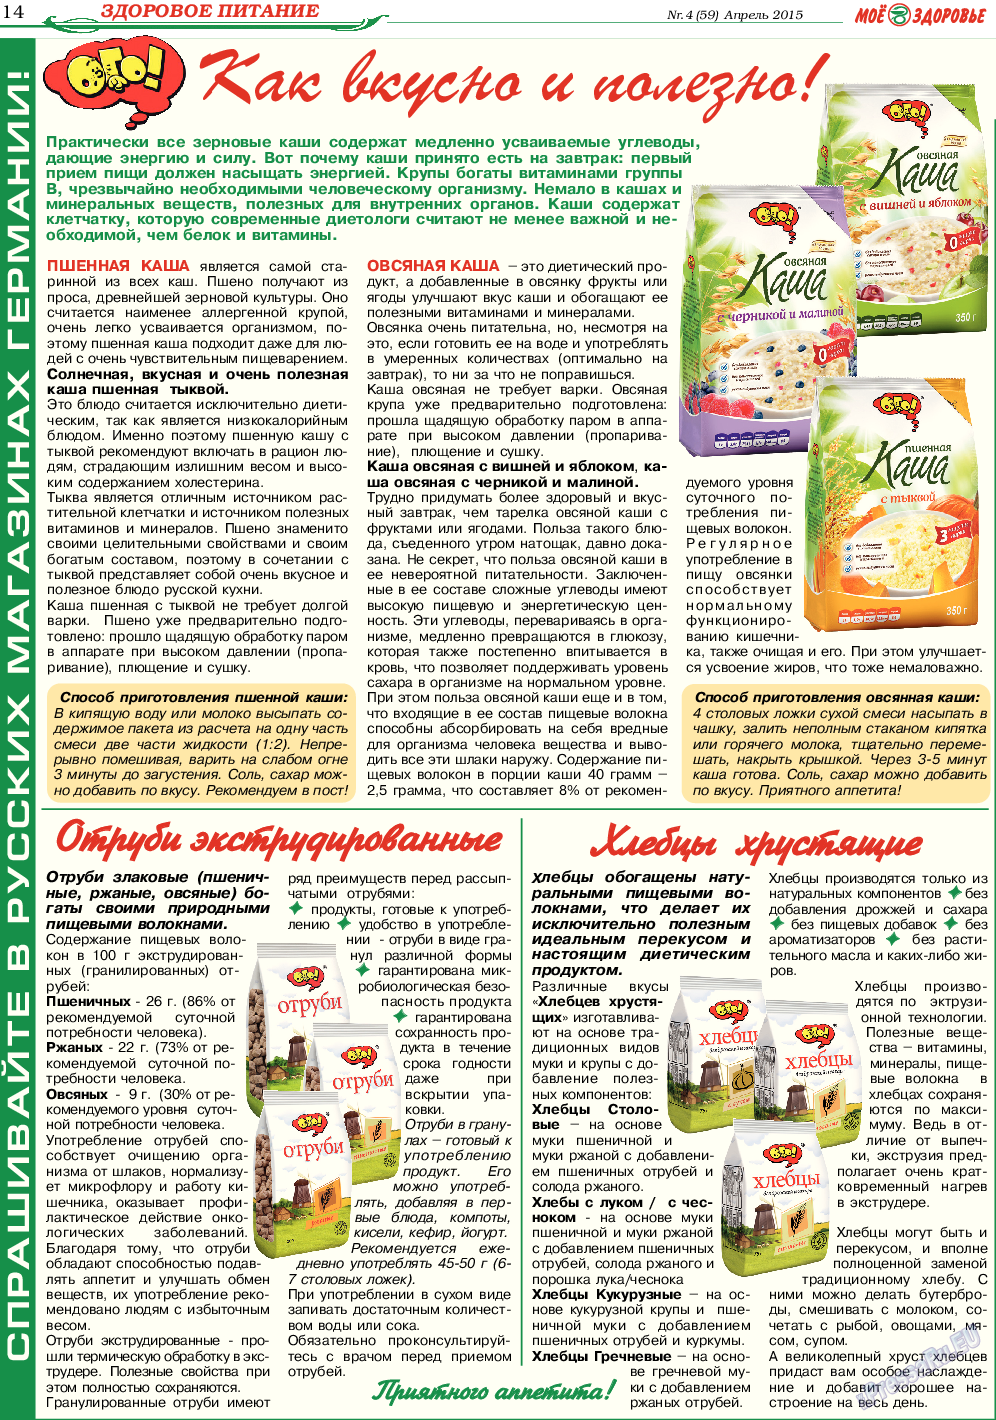 Кругозор, газета. 2015 №4 стр.14